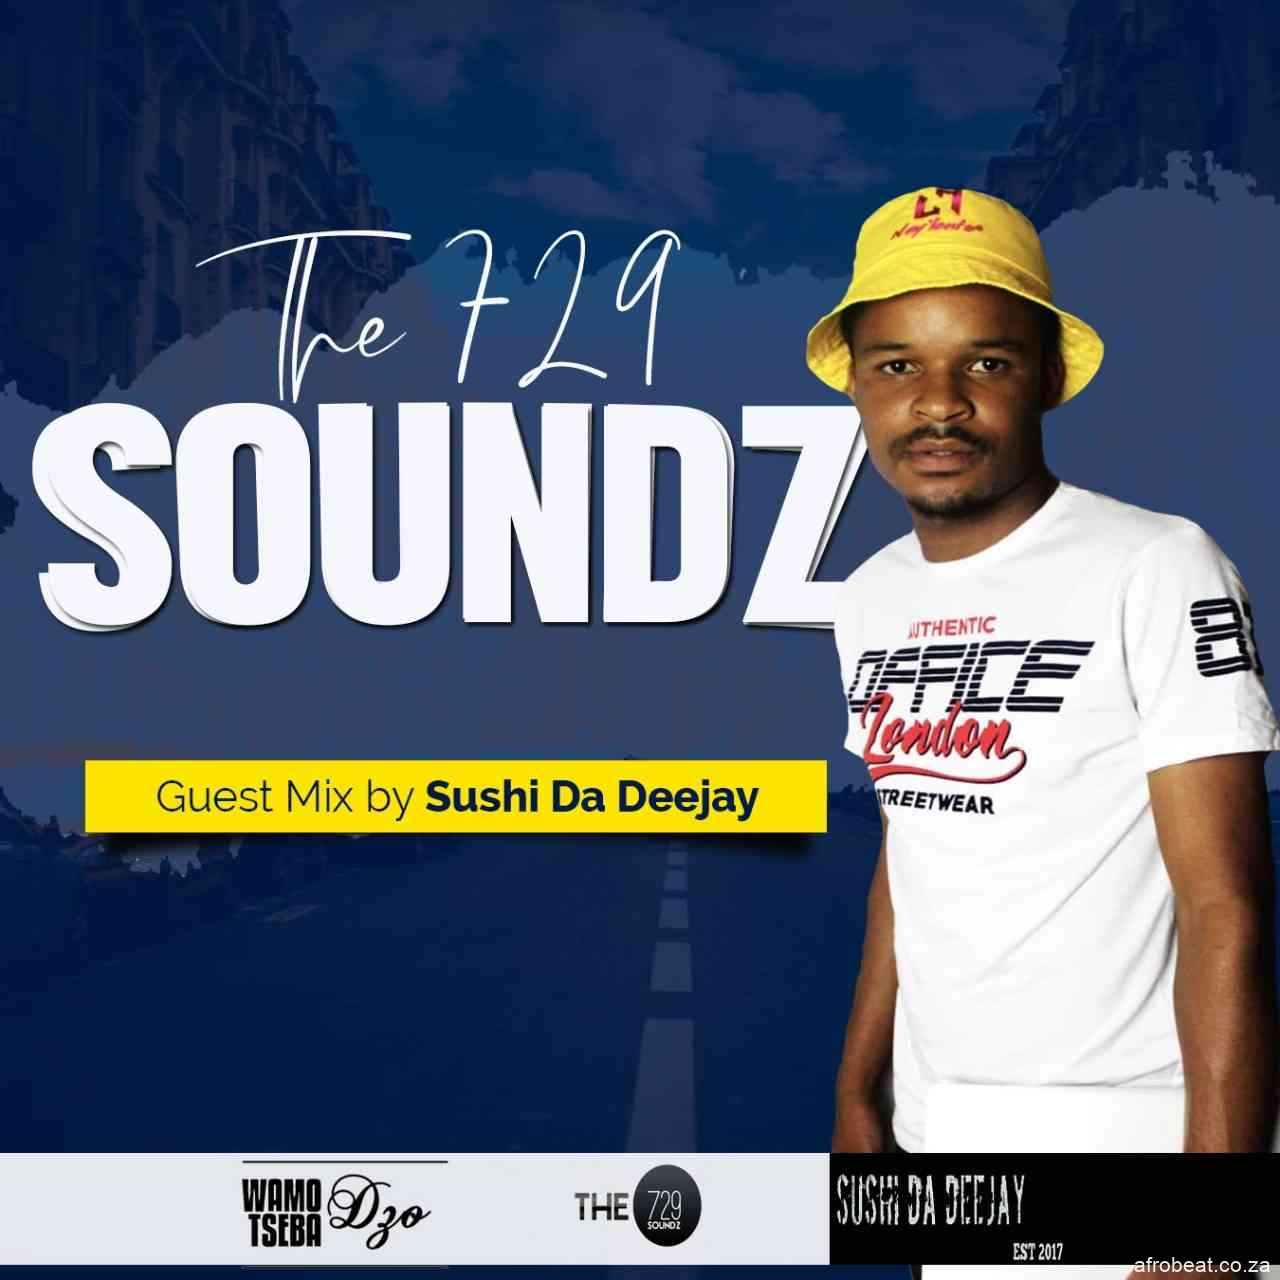 IMG 20210301 WA0037 - Sushi Da Deejay – The 729 Soundz (Guest Mix)